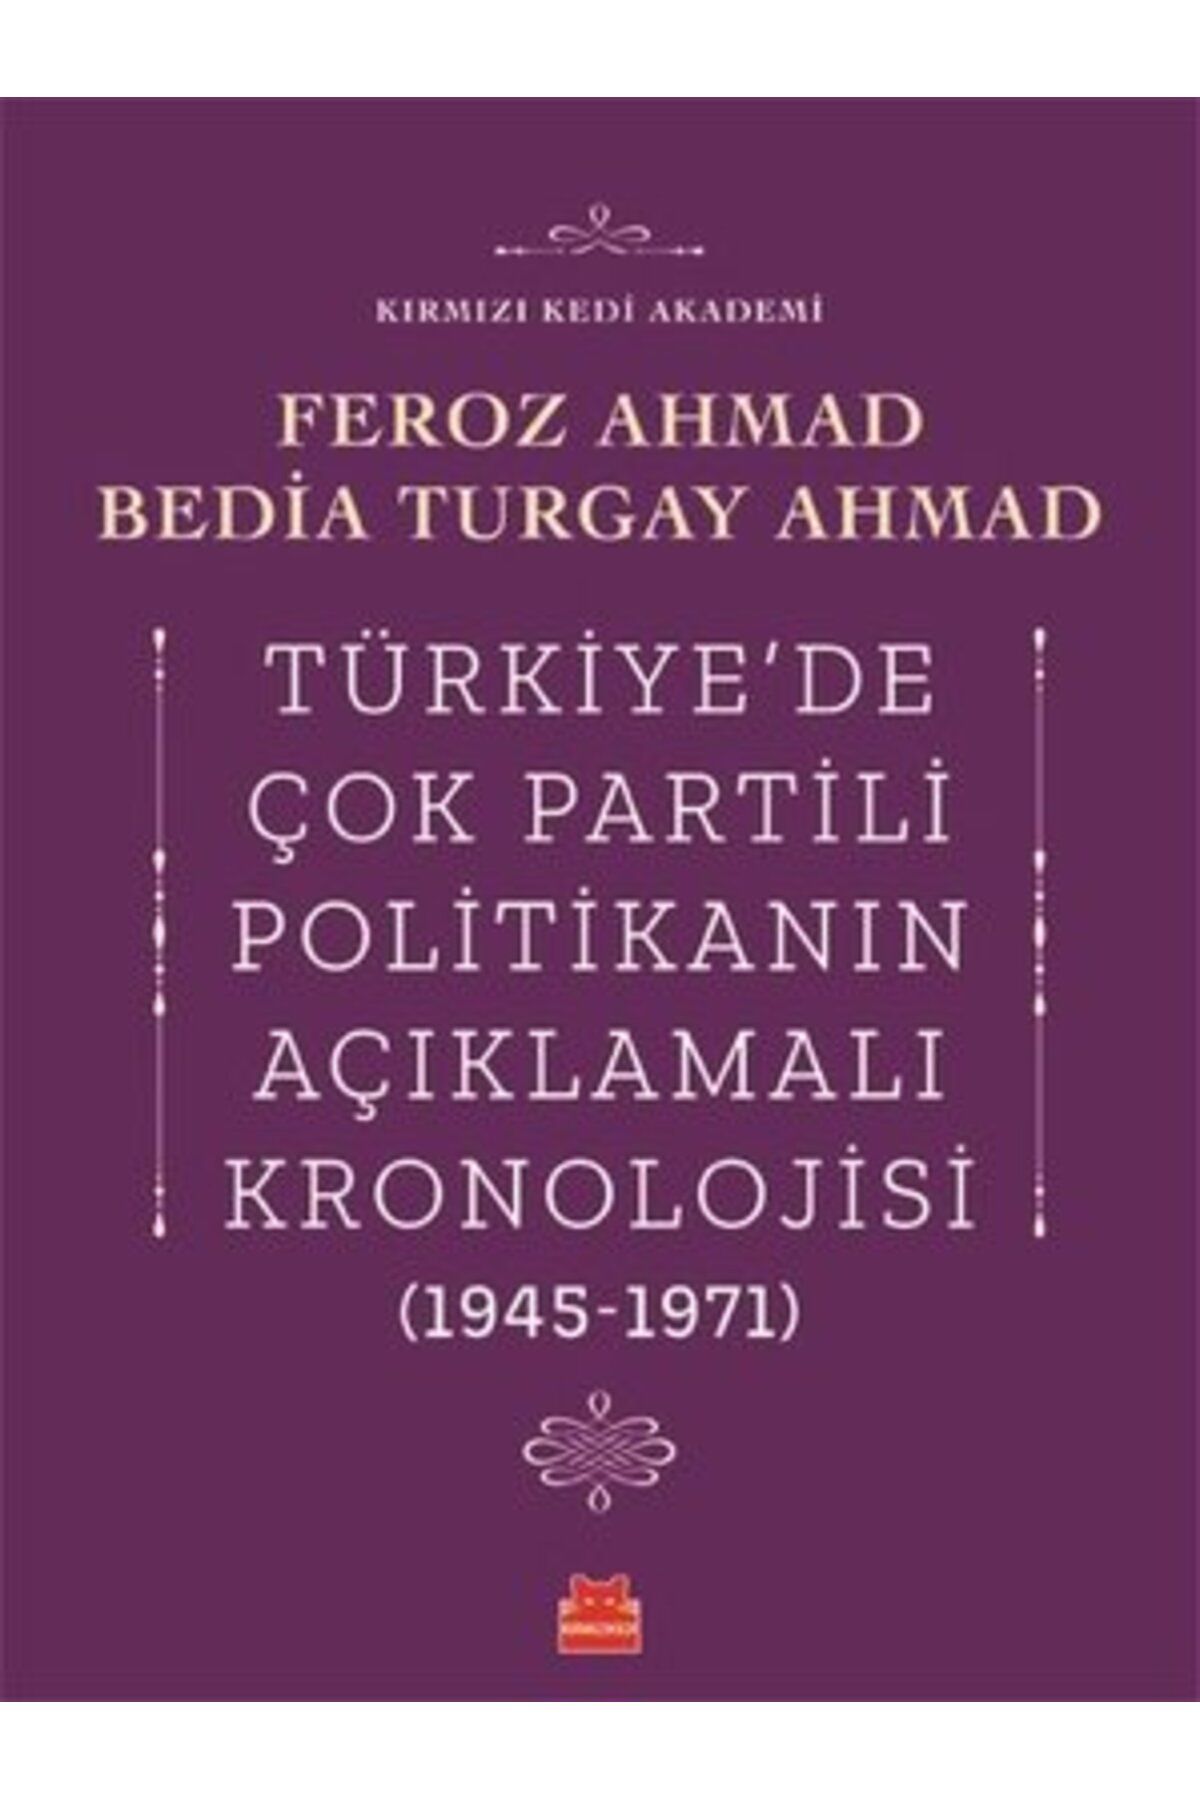 Kırmızı Kedi Yayınları Türkiyede Çok Partili Politikanın Açıklamalı Kronolojisi 1945